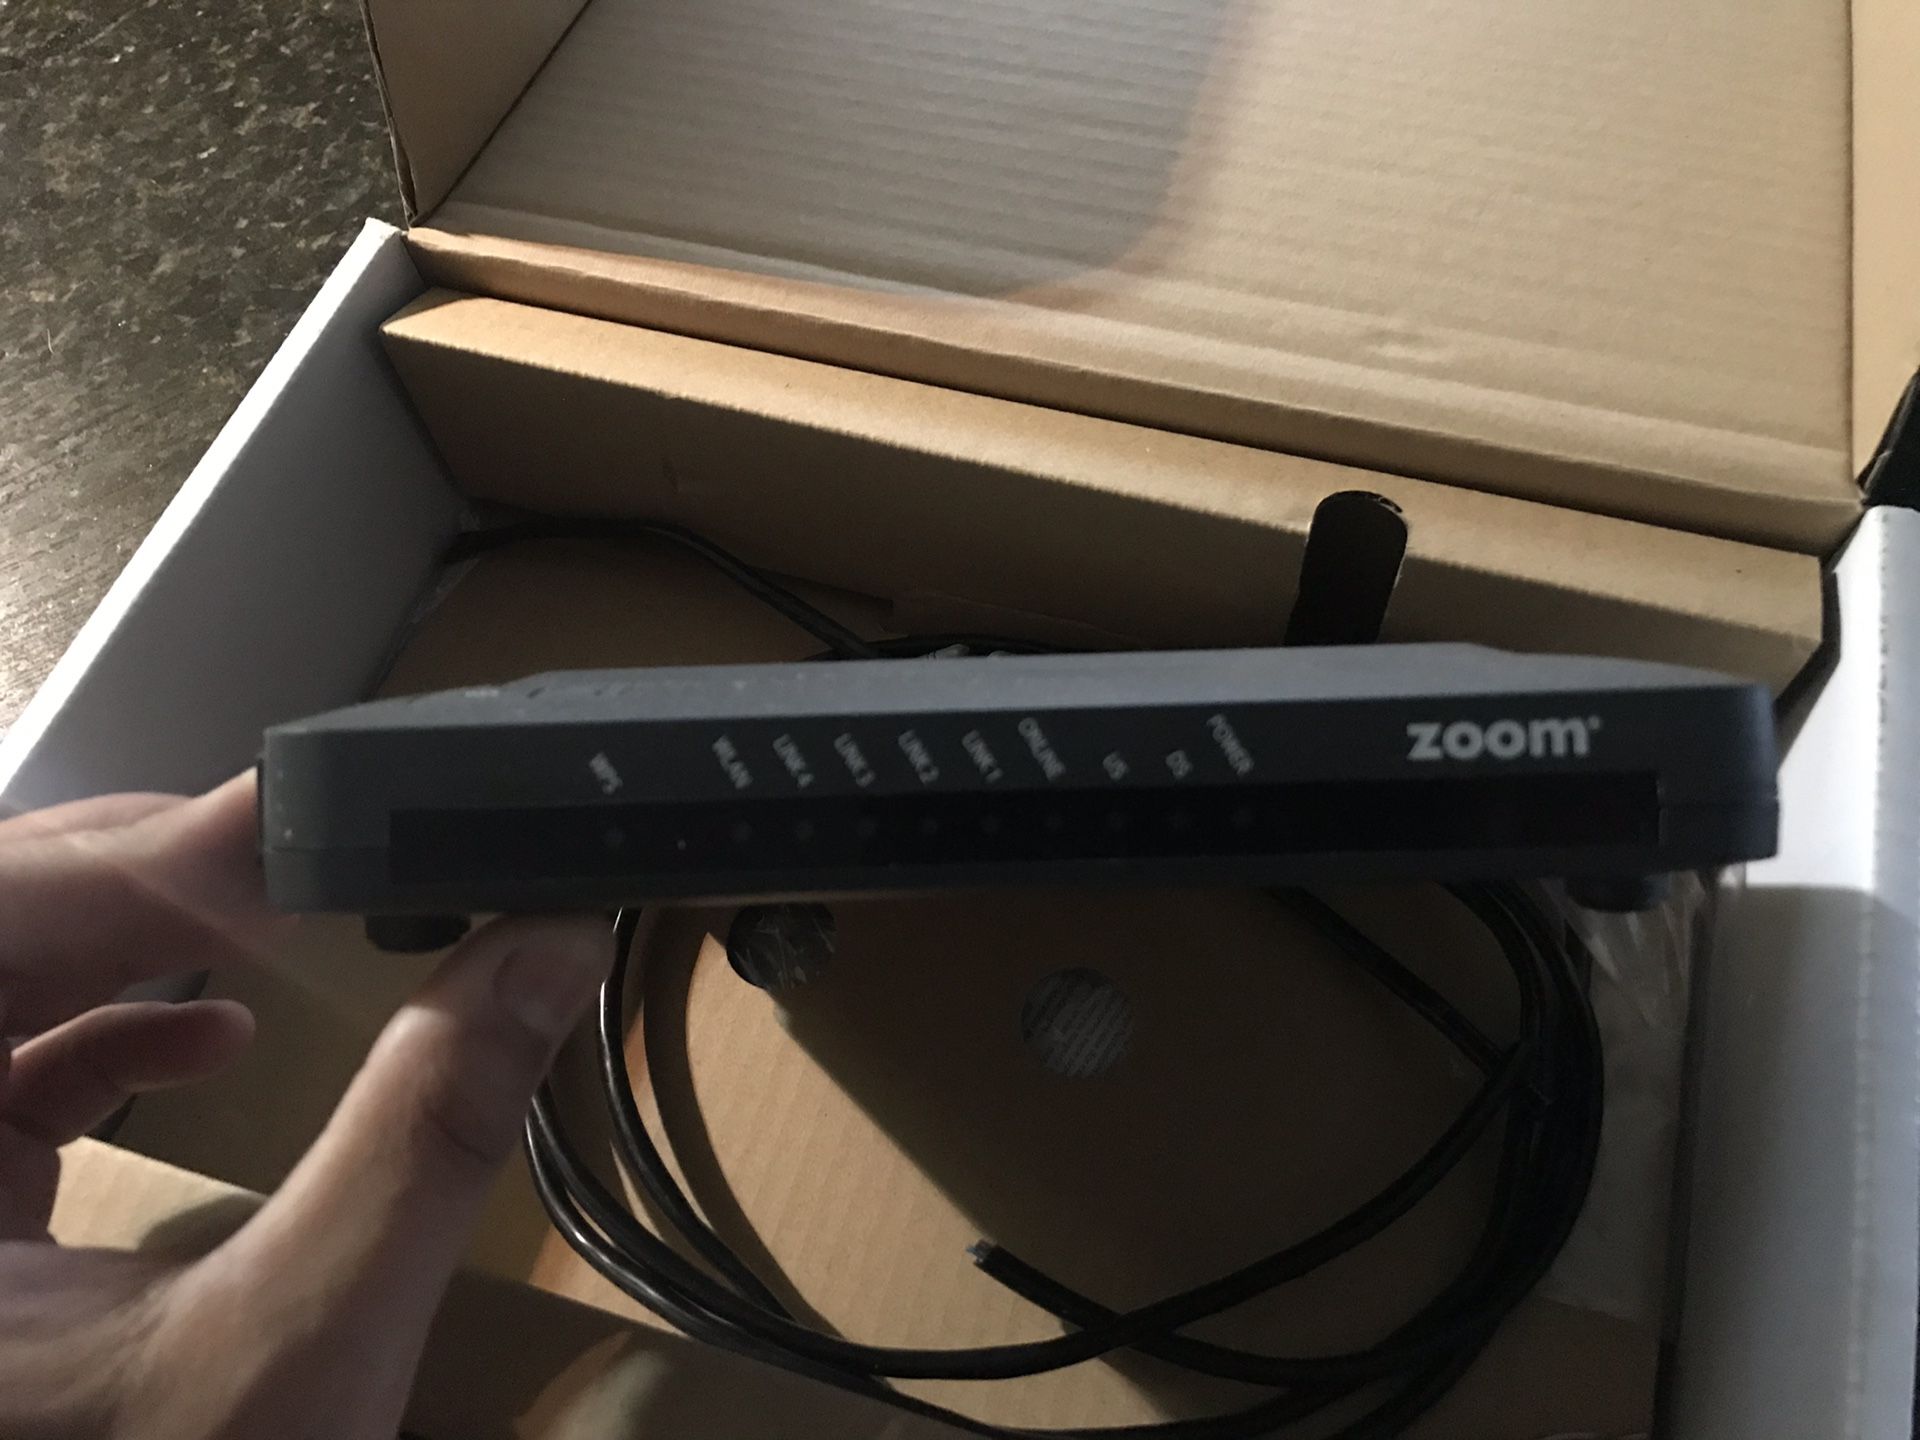 Zoom 5353 modem router xfinity